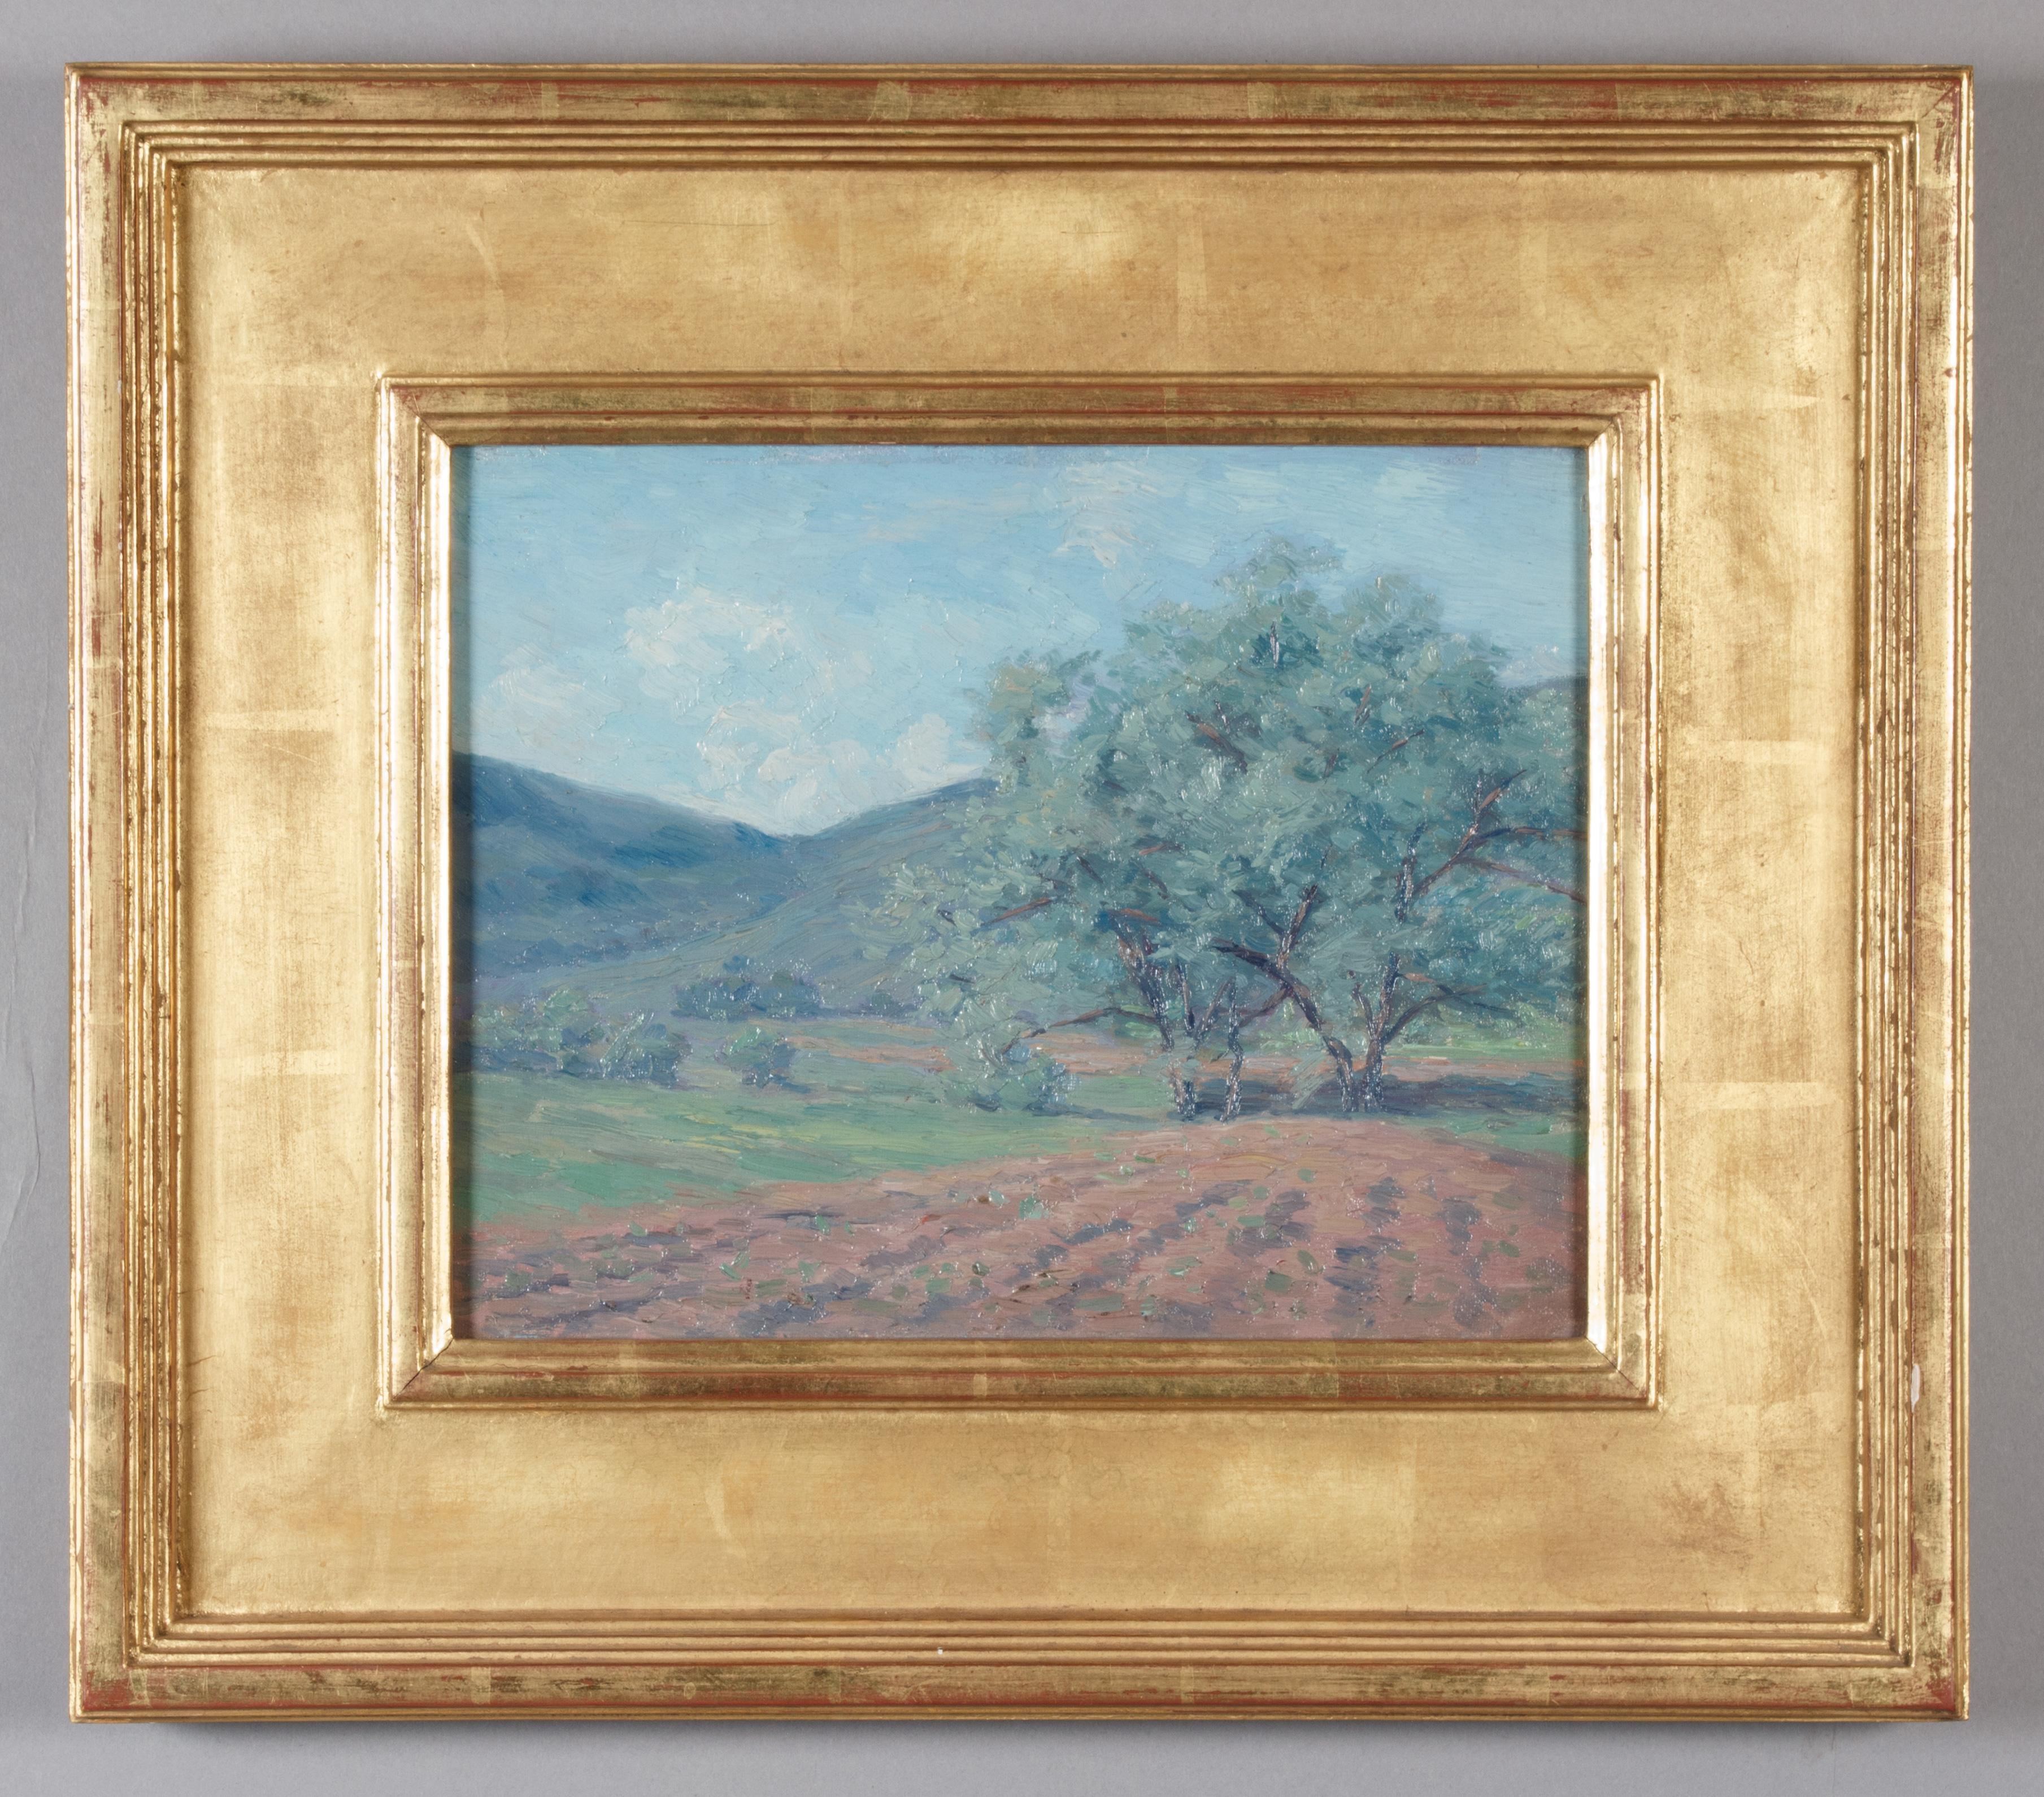 Landscape Painting William S. Butz - Woodstock : Champ avec arbres dans un paysage vallonné